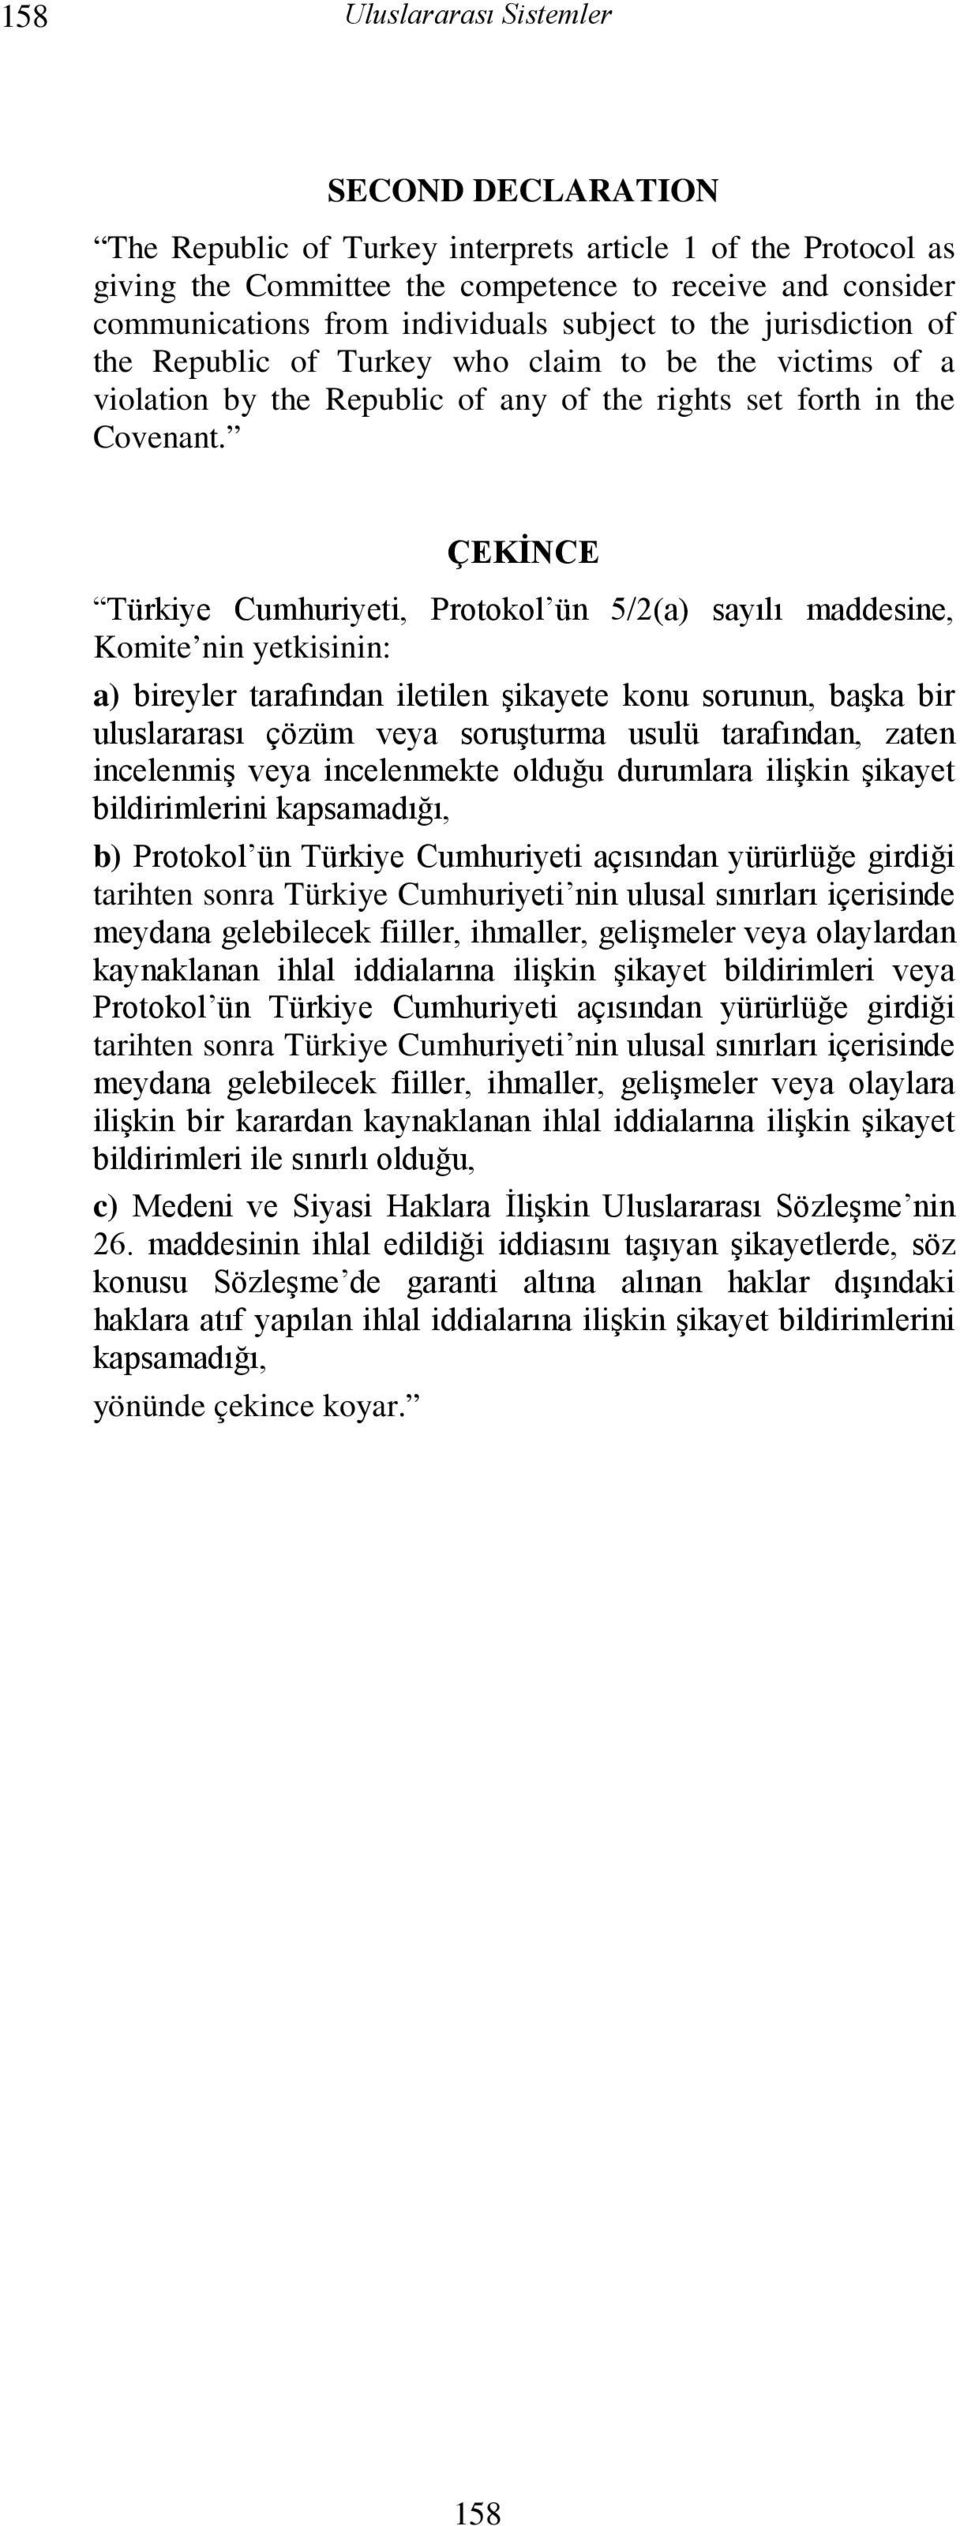 ÇEKİNCE Türkiye Cumhuriyeti, Protokol ün 5/2(a) sayılı maddesine, Komite nin yetkisinin: a) bireyler tarafından iletilen şikayete konu sorunun, başka bir uluslararası çözüm veya soruşturma usulü